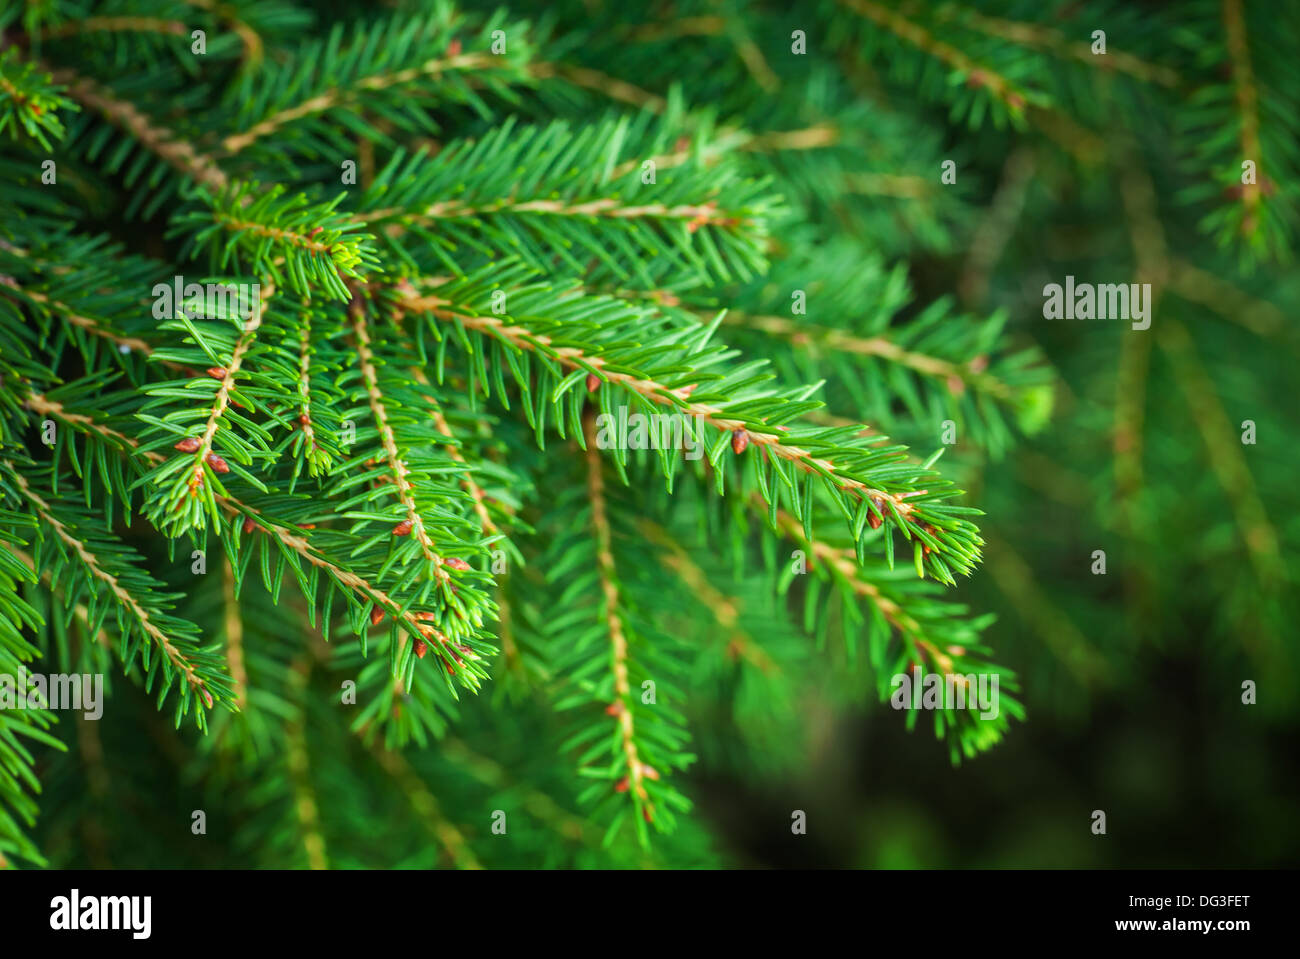 Leuchtend grüne Tanne Baum Zweige Makrofoto mit selektiven Fokus Stockfoto